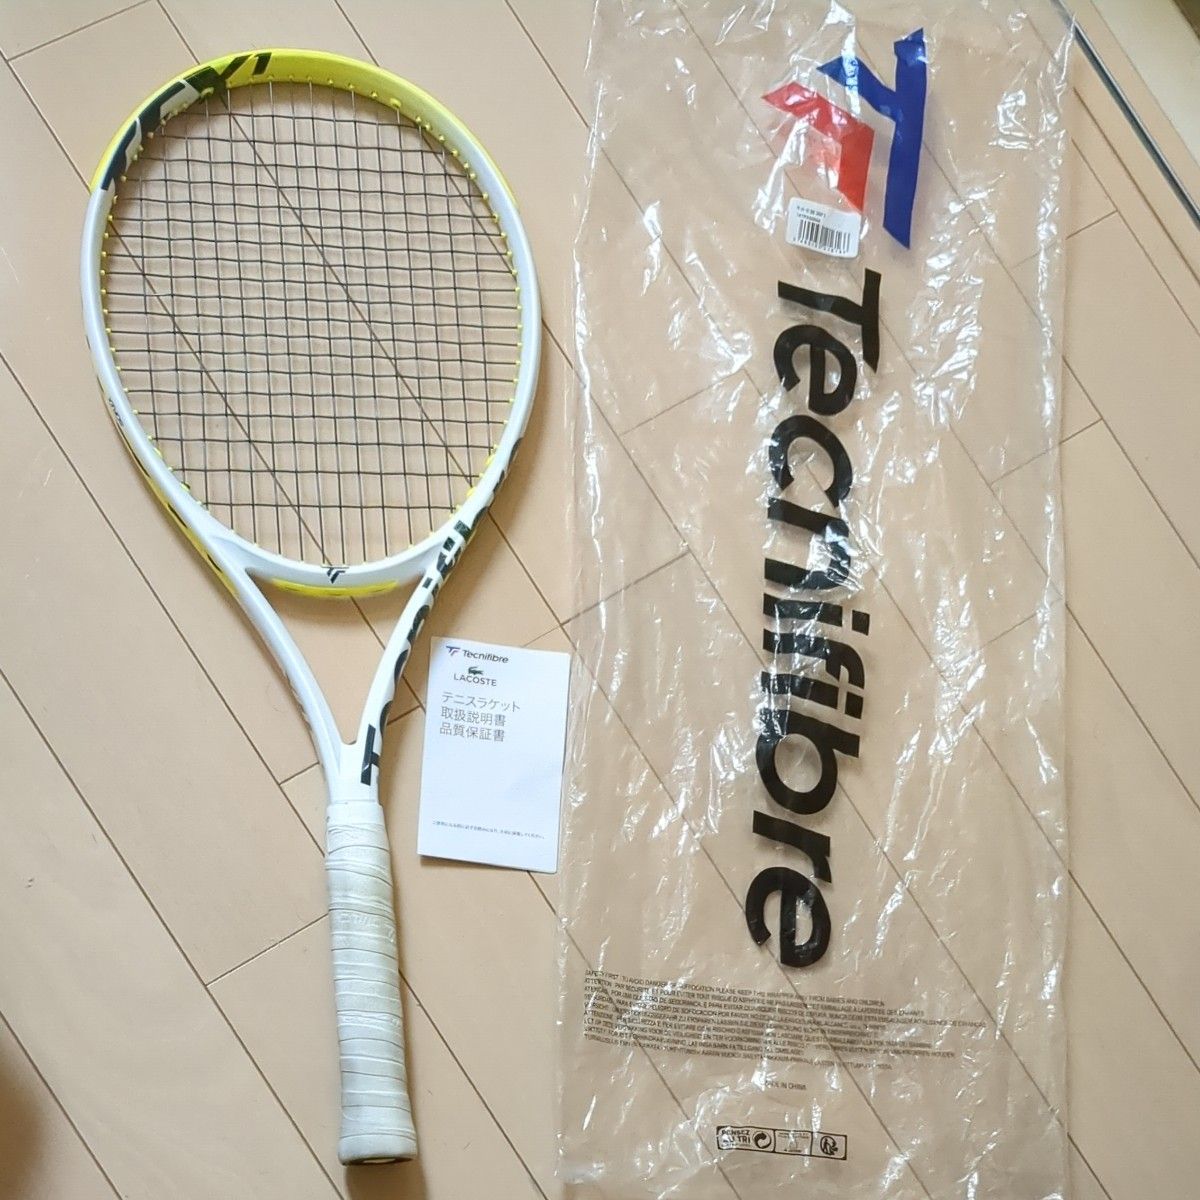 テクニファイバー テニスラケット    TF-X1 V2 305 ティーエフ エックスワン G3